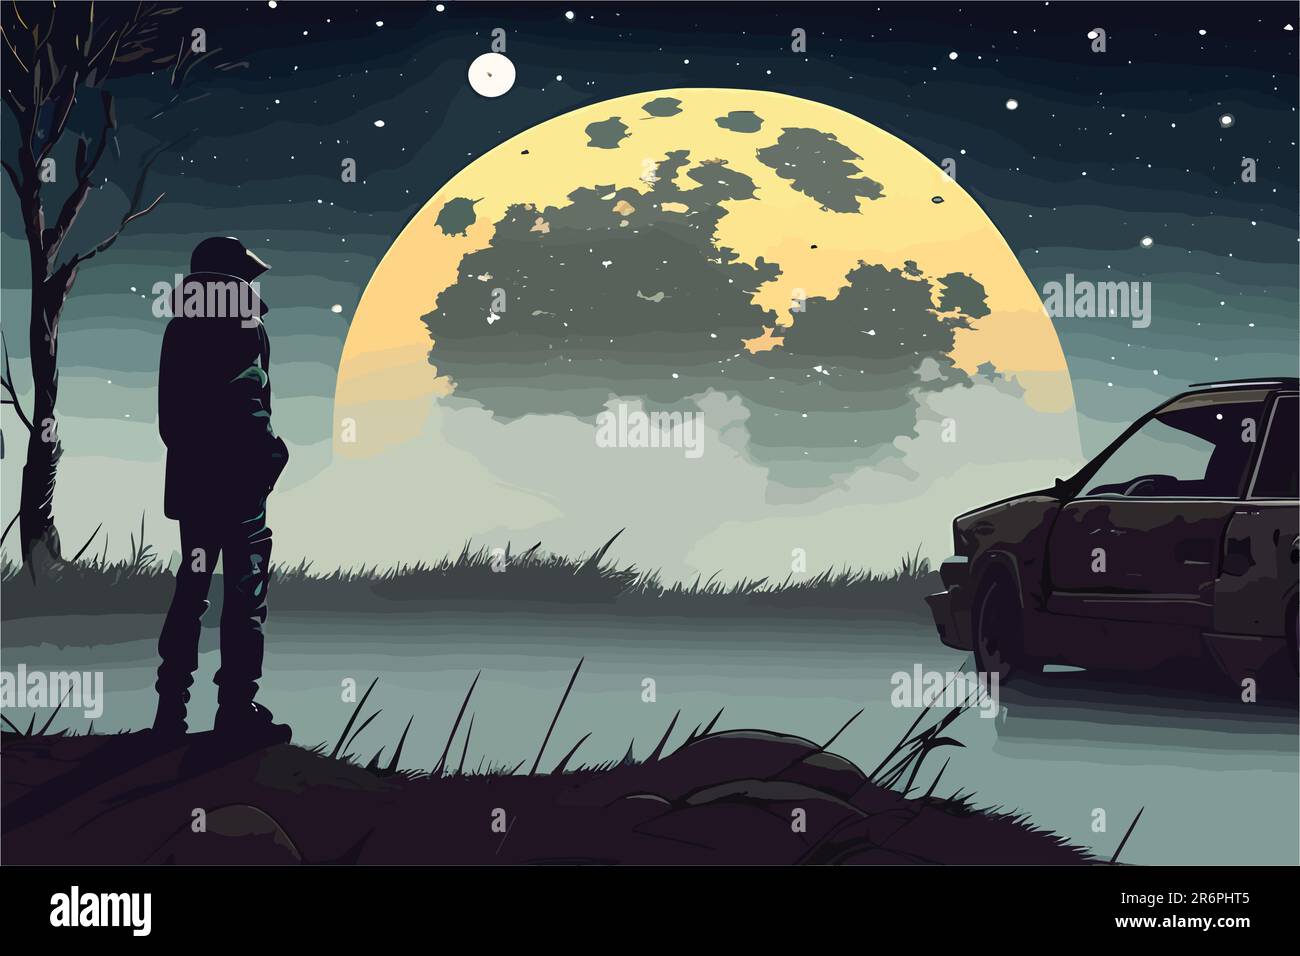 l'art vectoriel d'un homme assis seul et regardant le ciel nocturne avec la lune. vieille voiture en arrière-plan. Illustration de Vecteur